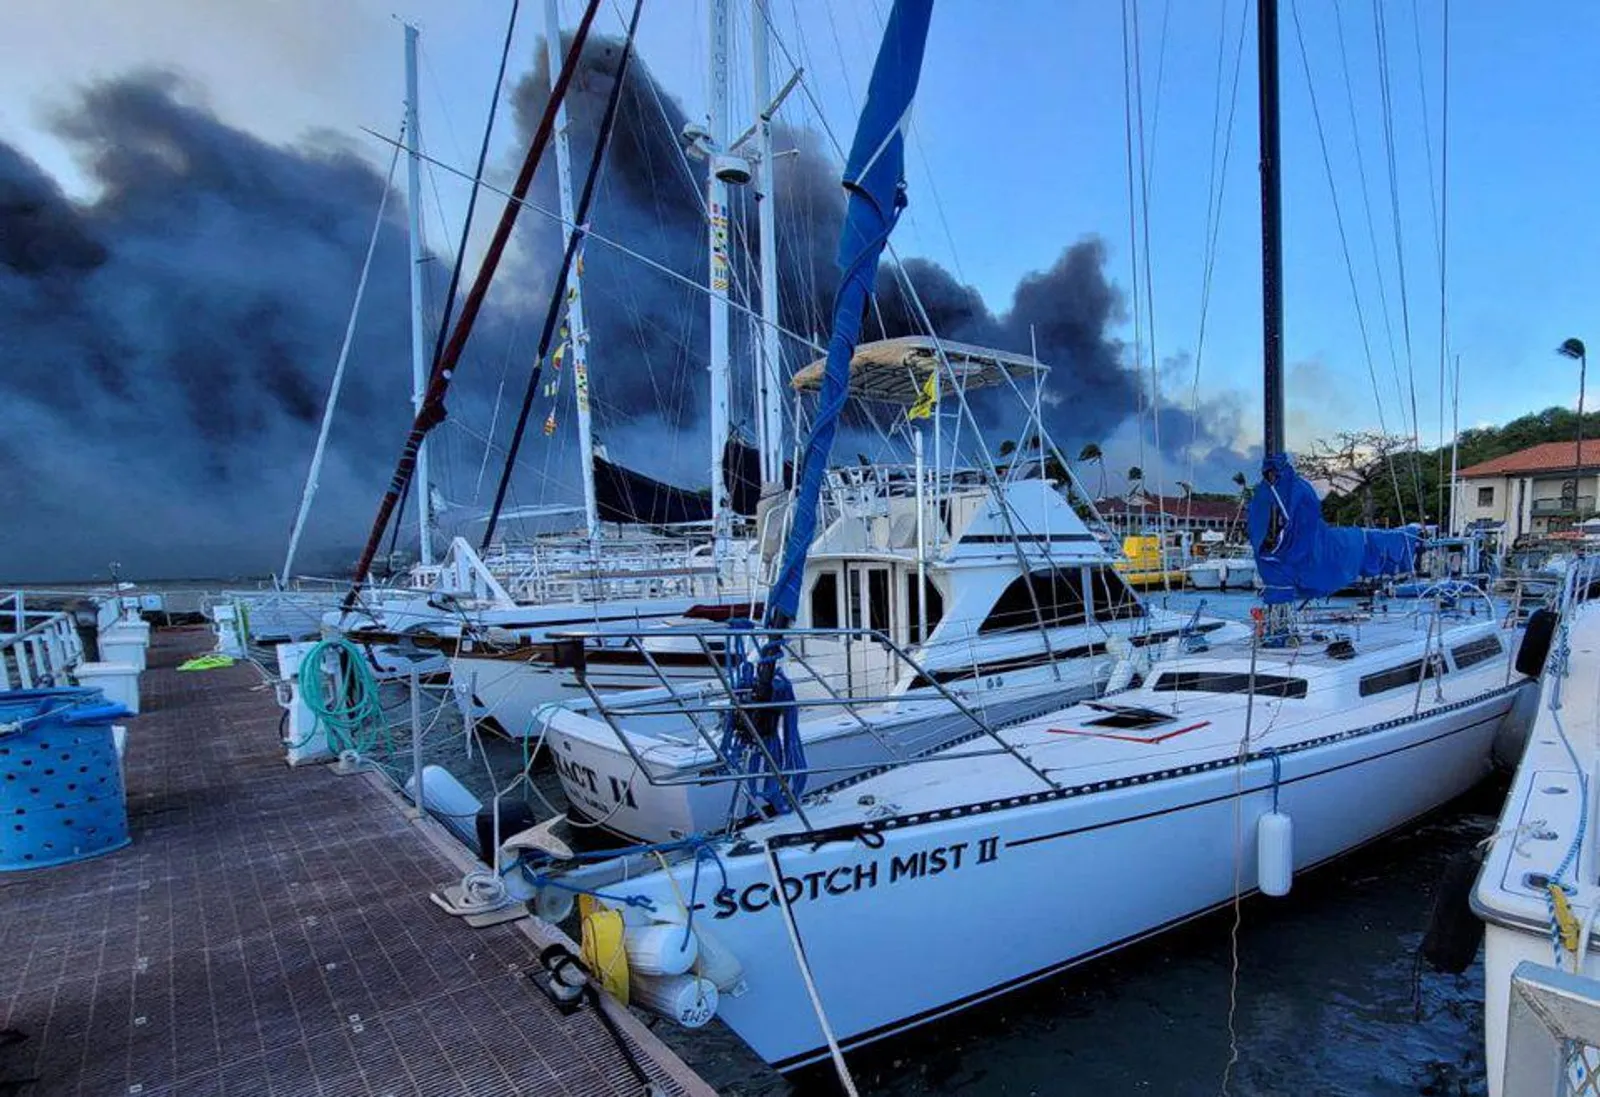 Tragedi dan Foto Kebakaran Hutan di Maui, Hawaii Bak Kiamat!